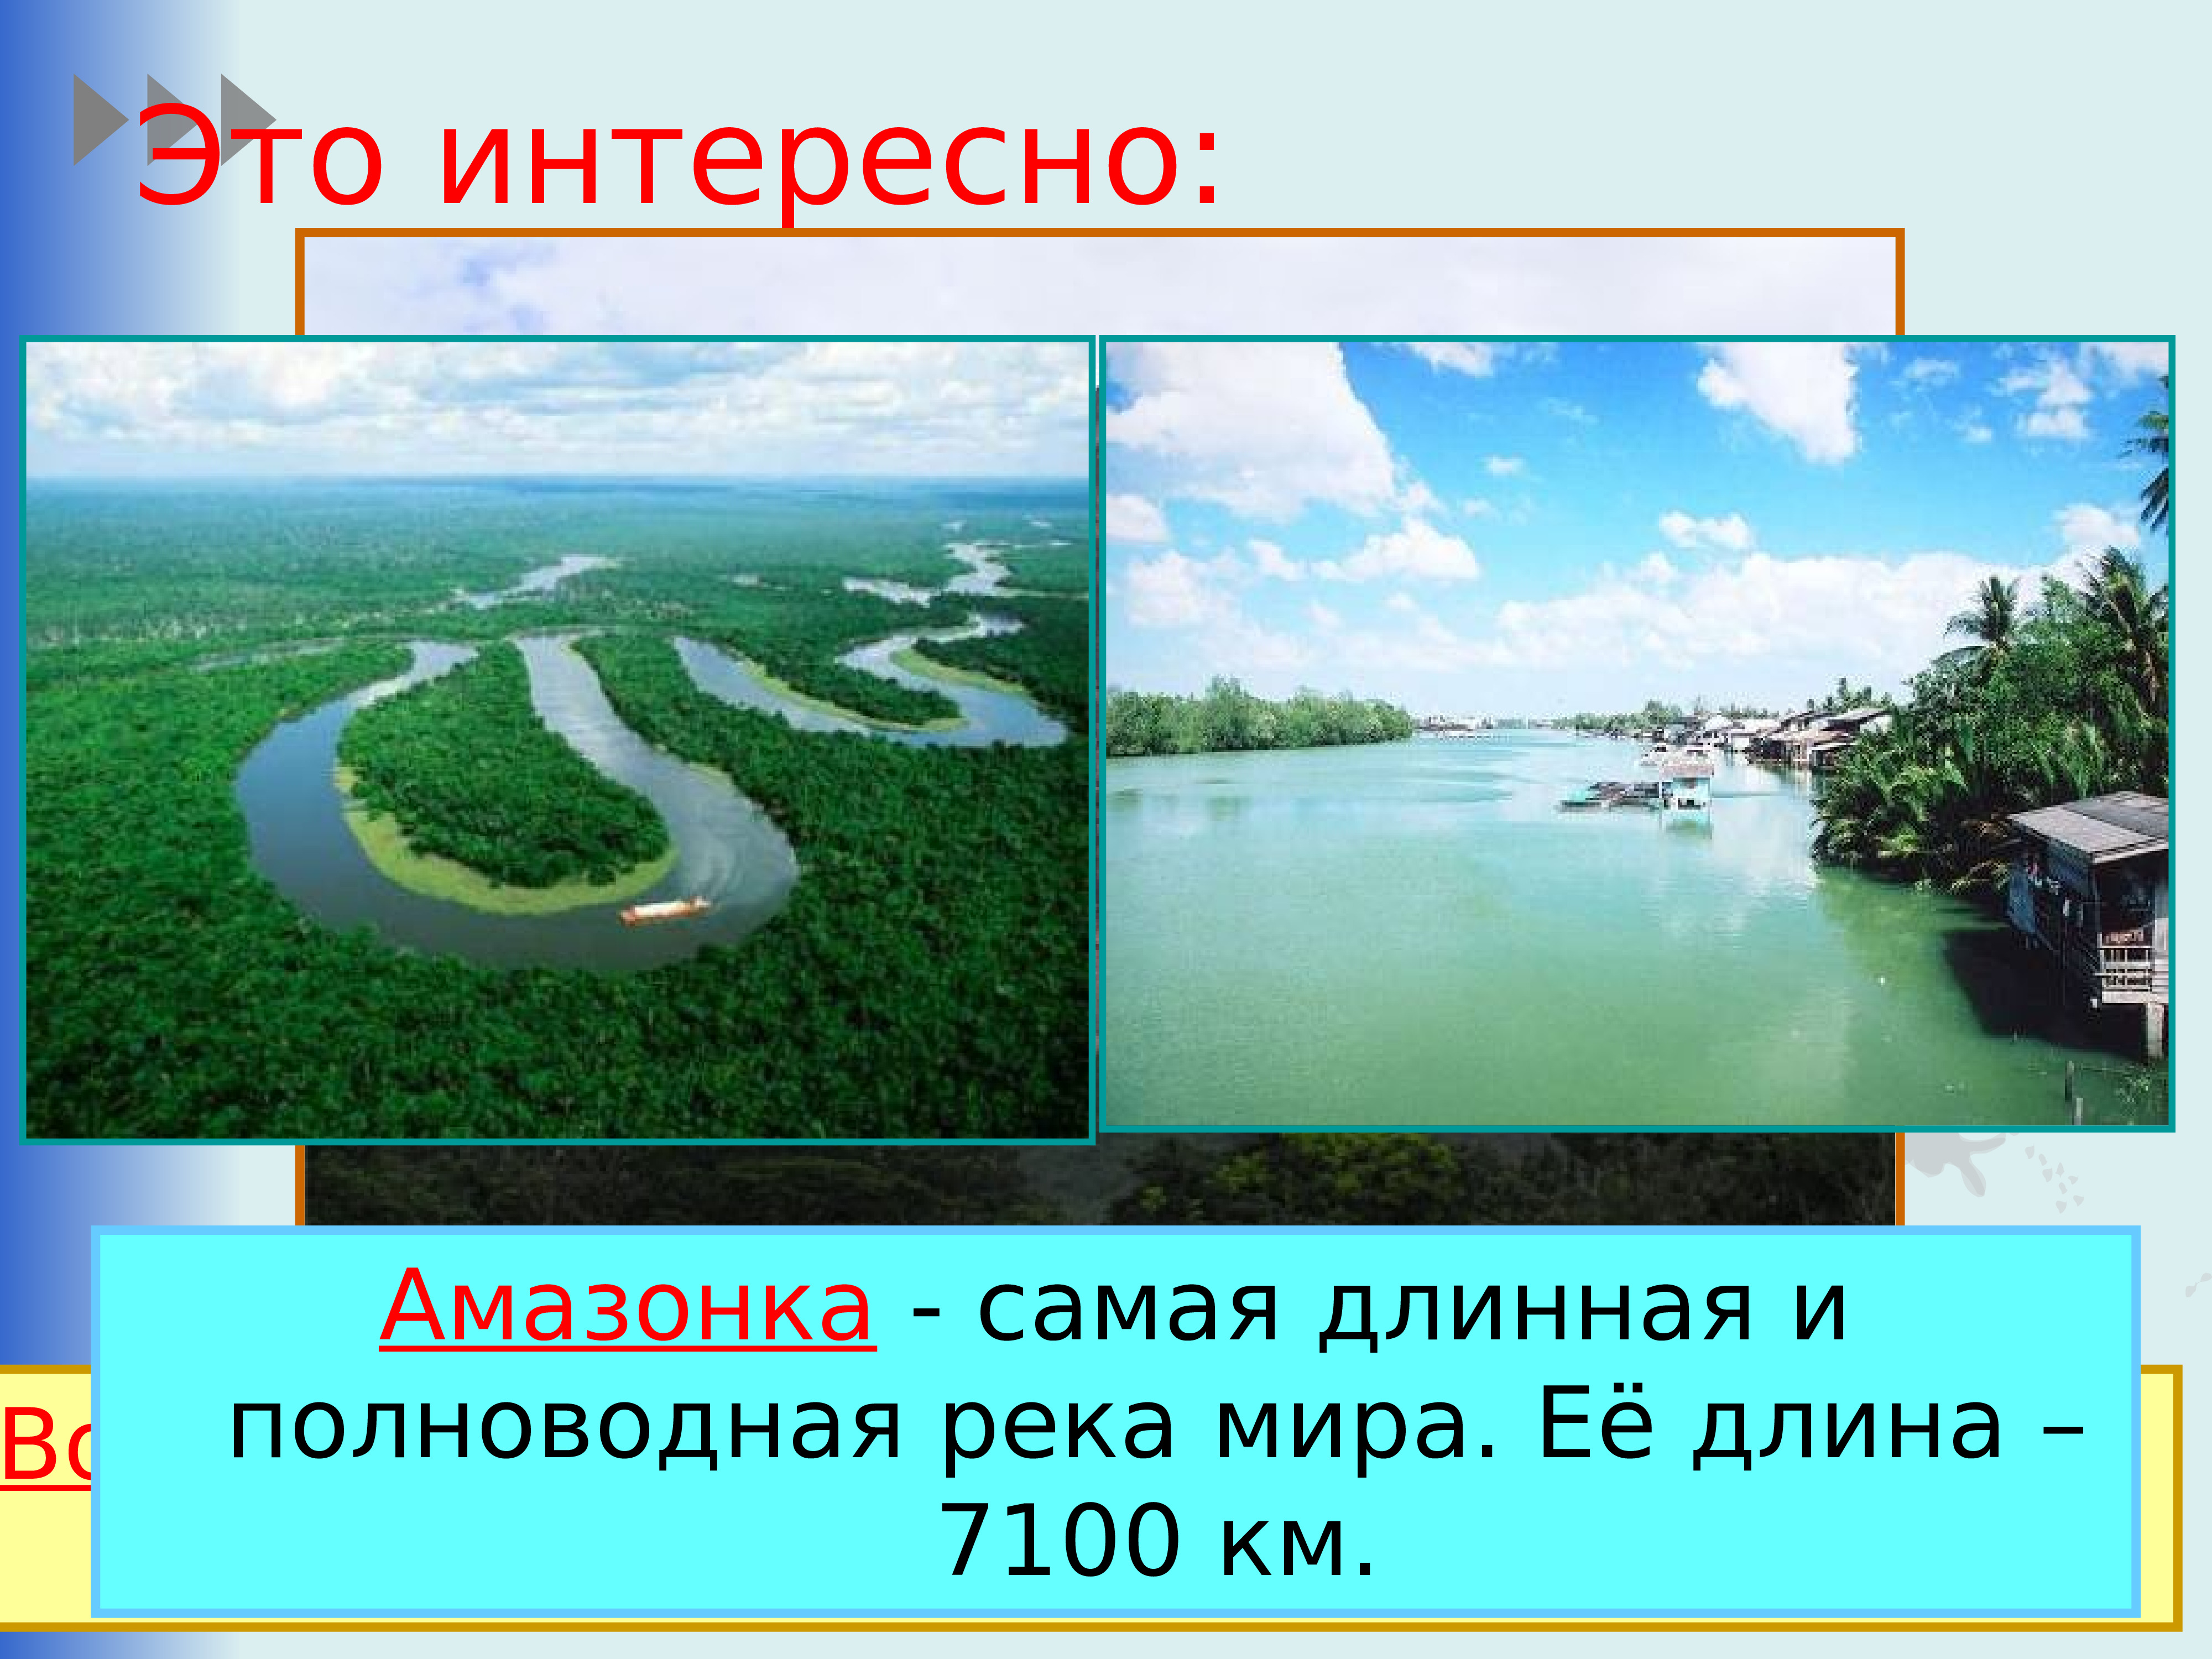 Наиболее полноводная река. Самая длинная река в мире. Самая длинная поллводная река в мир.